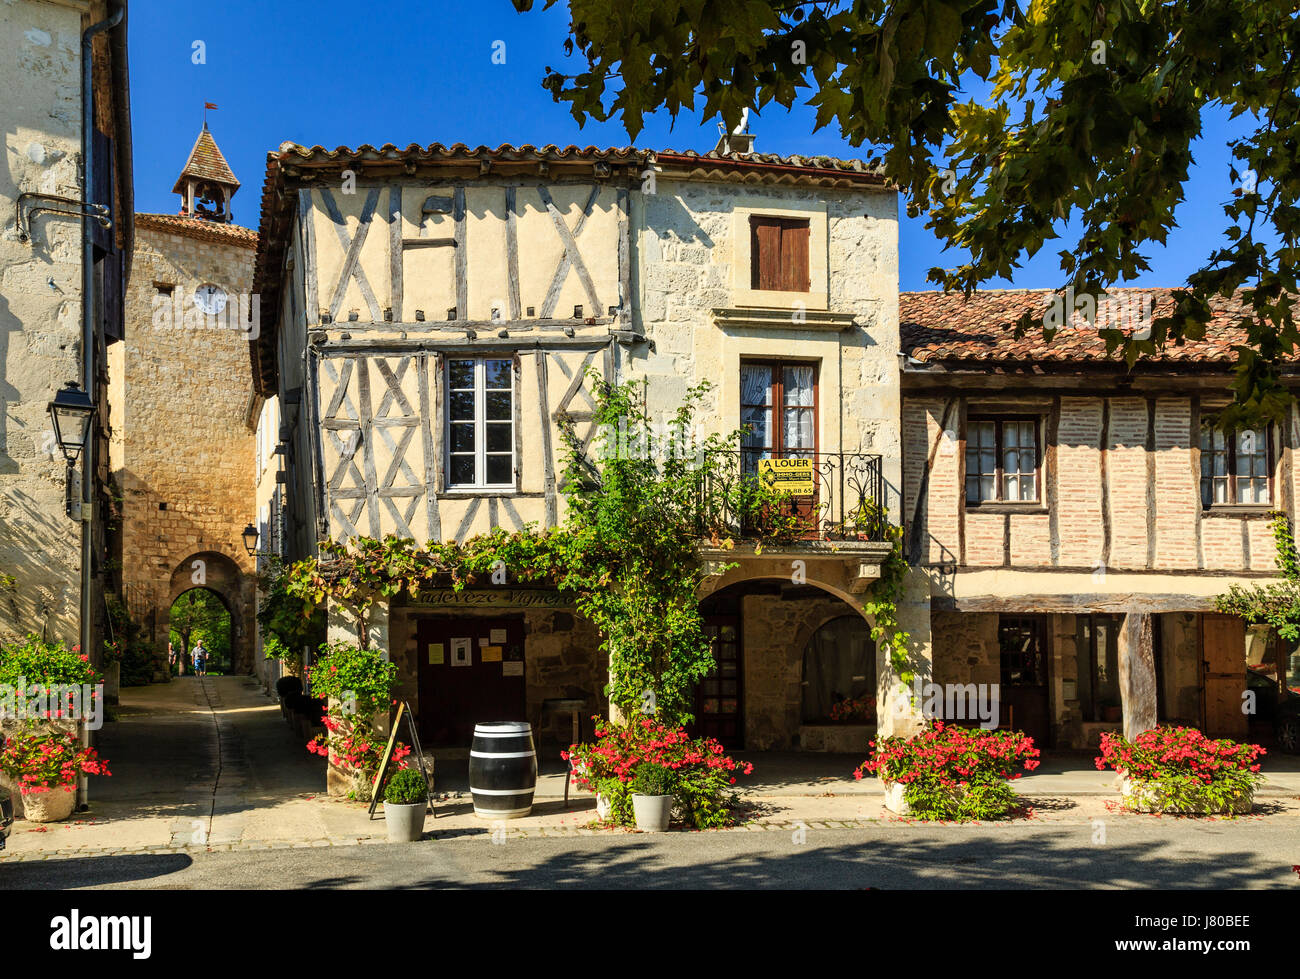 Francia, Gers, Fources, etichettati Les Plus Beaux Villages de France (i più bei villaggi di Francia), case porticate della piazza circolare Foto Stock